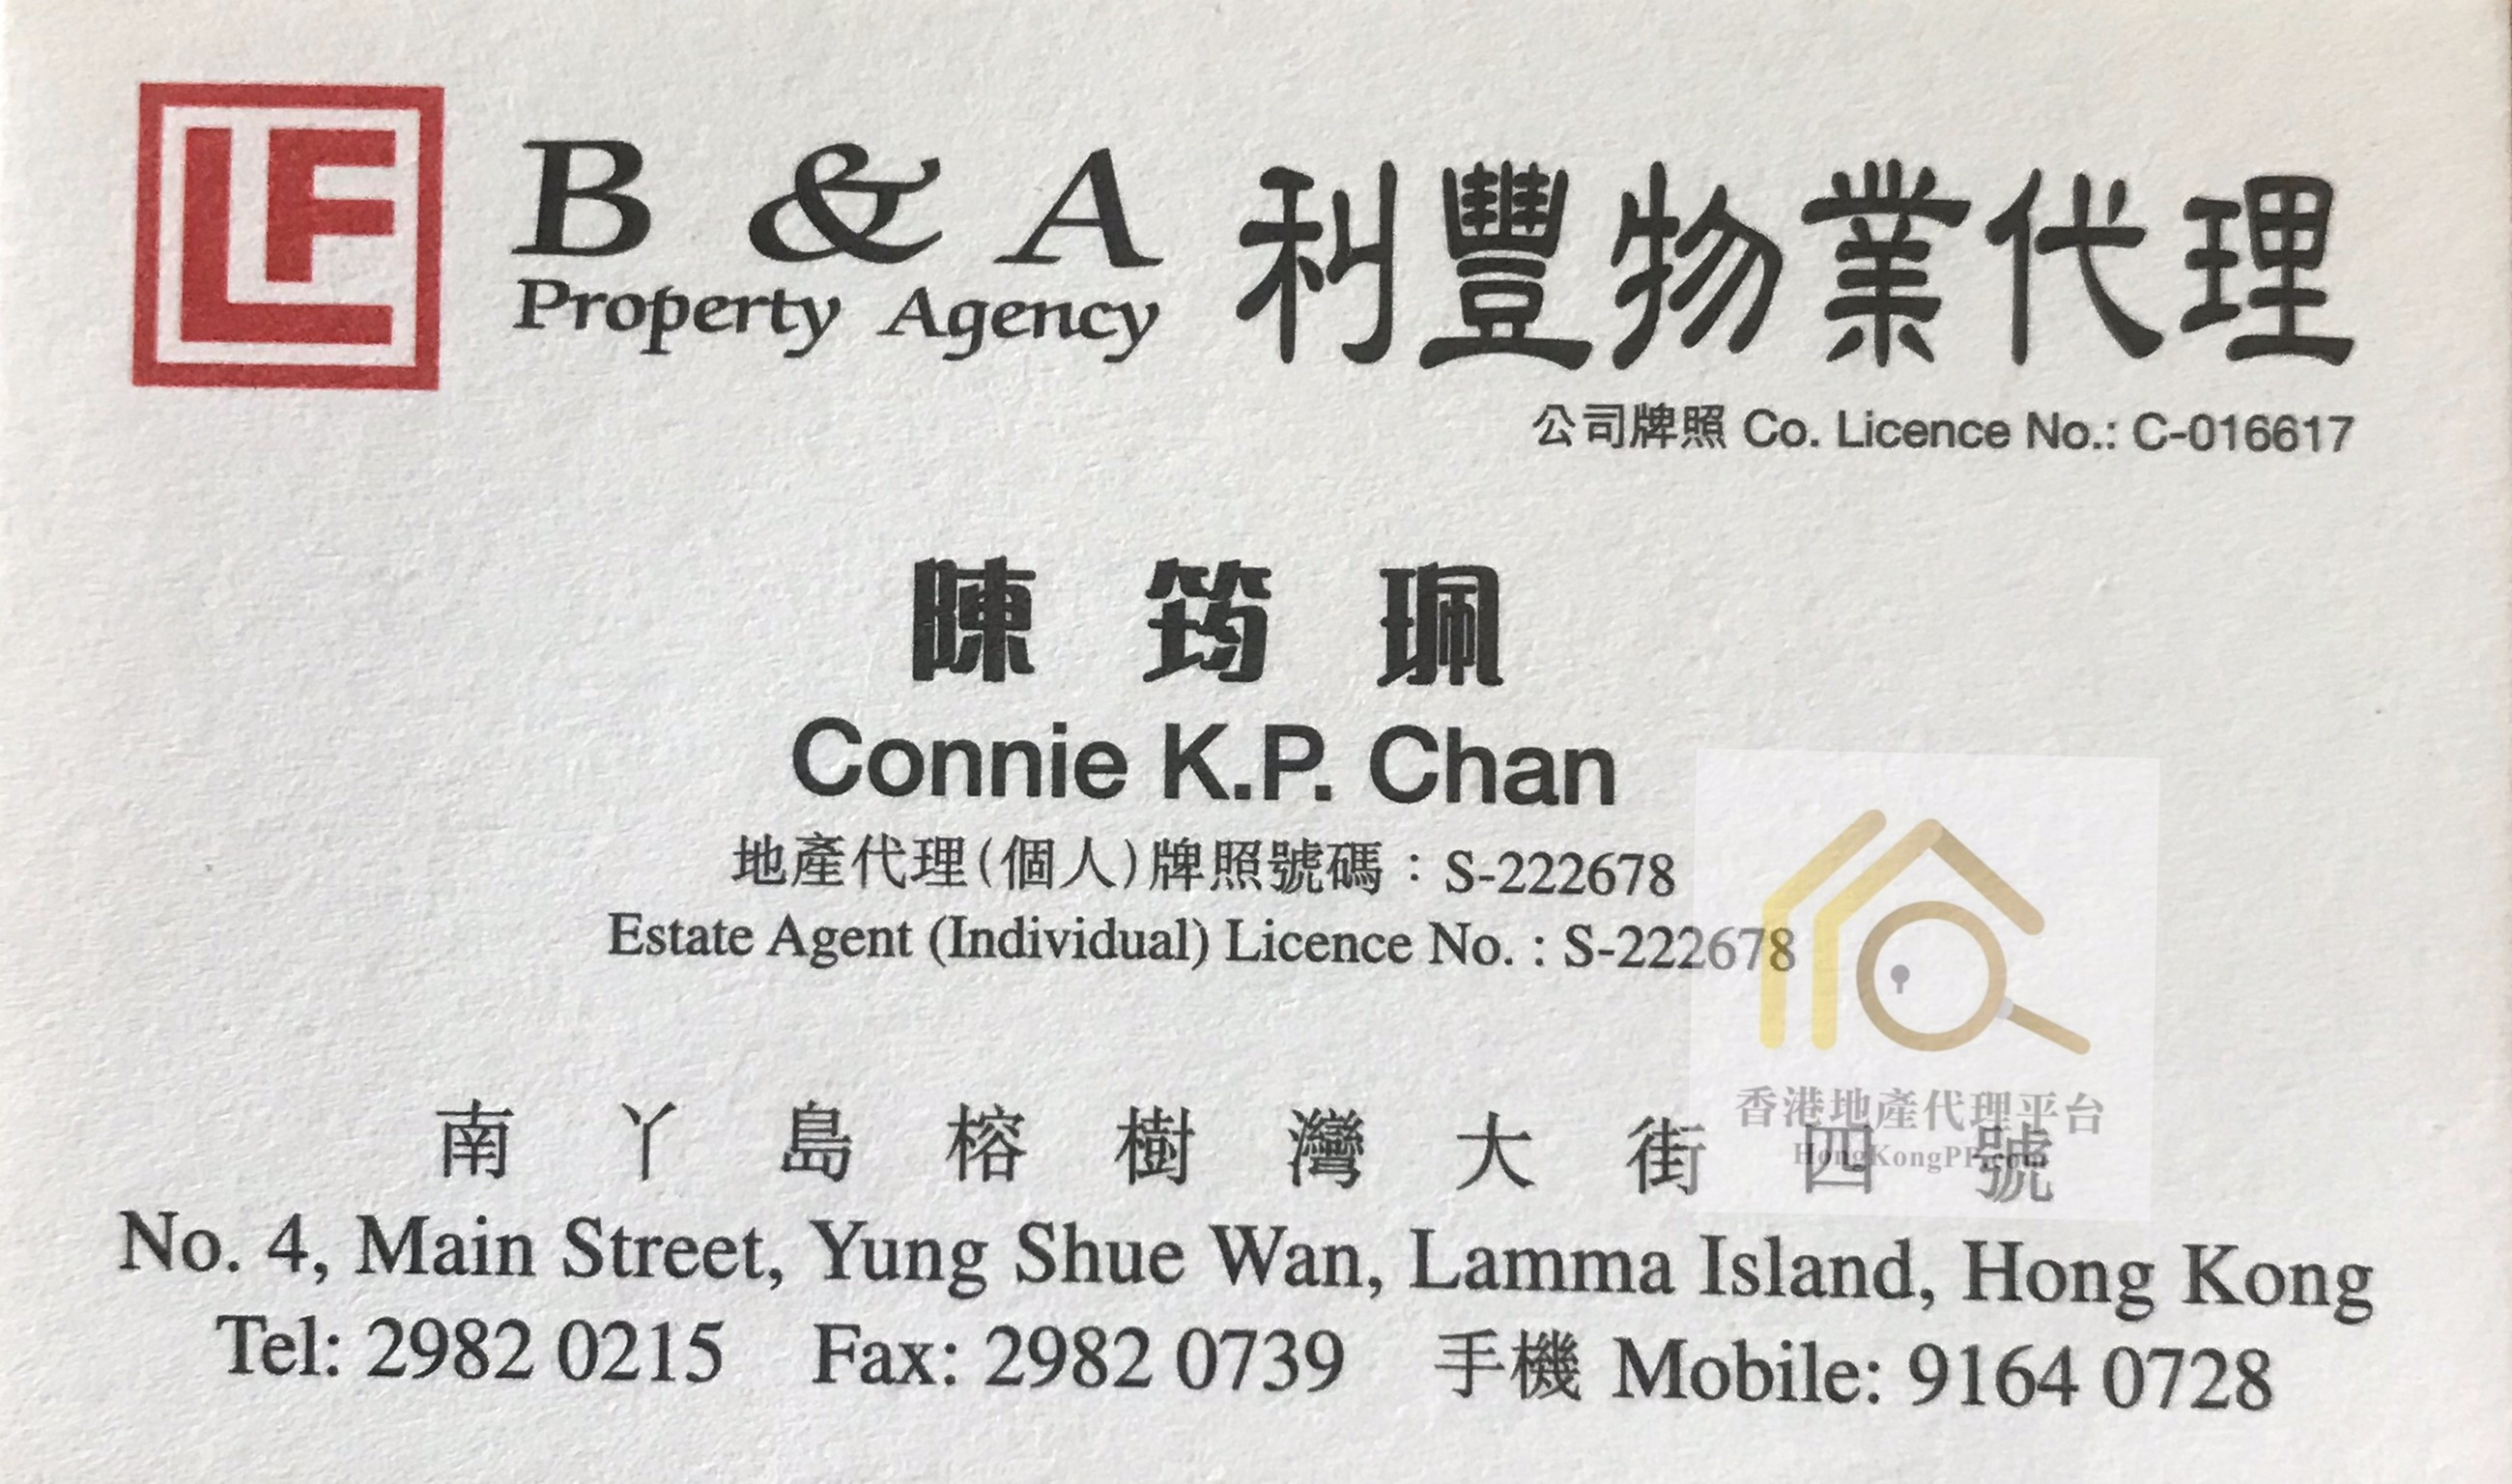 住宅地產代理: B & A Property Agency